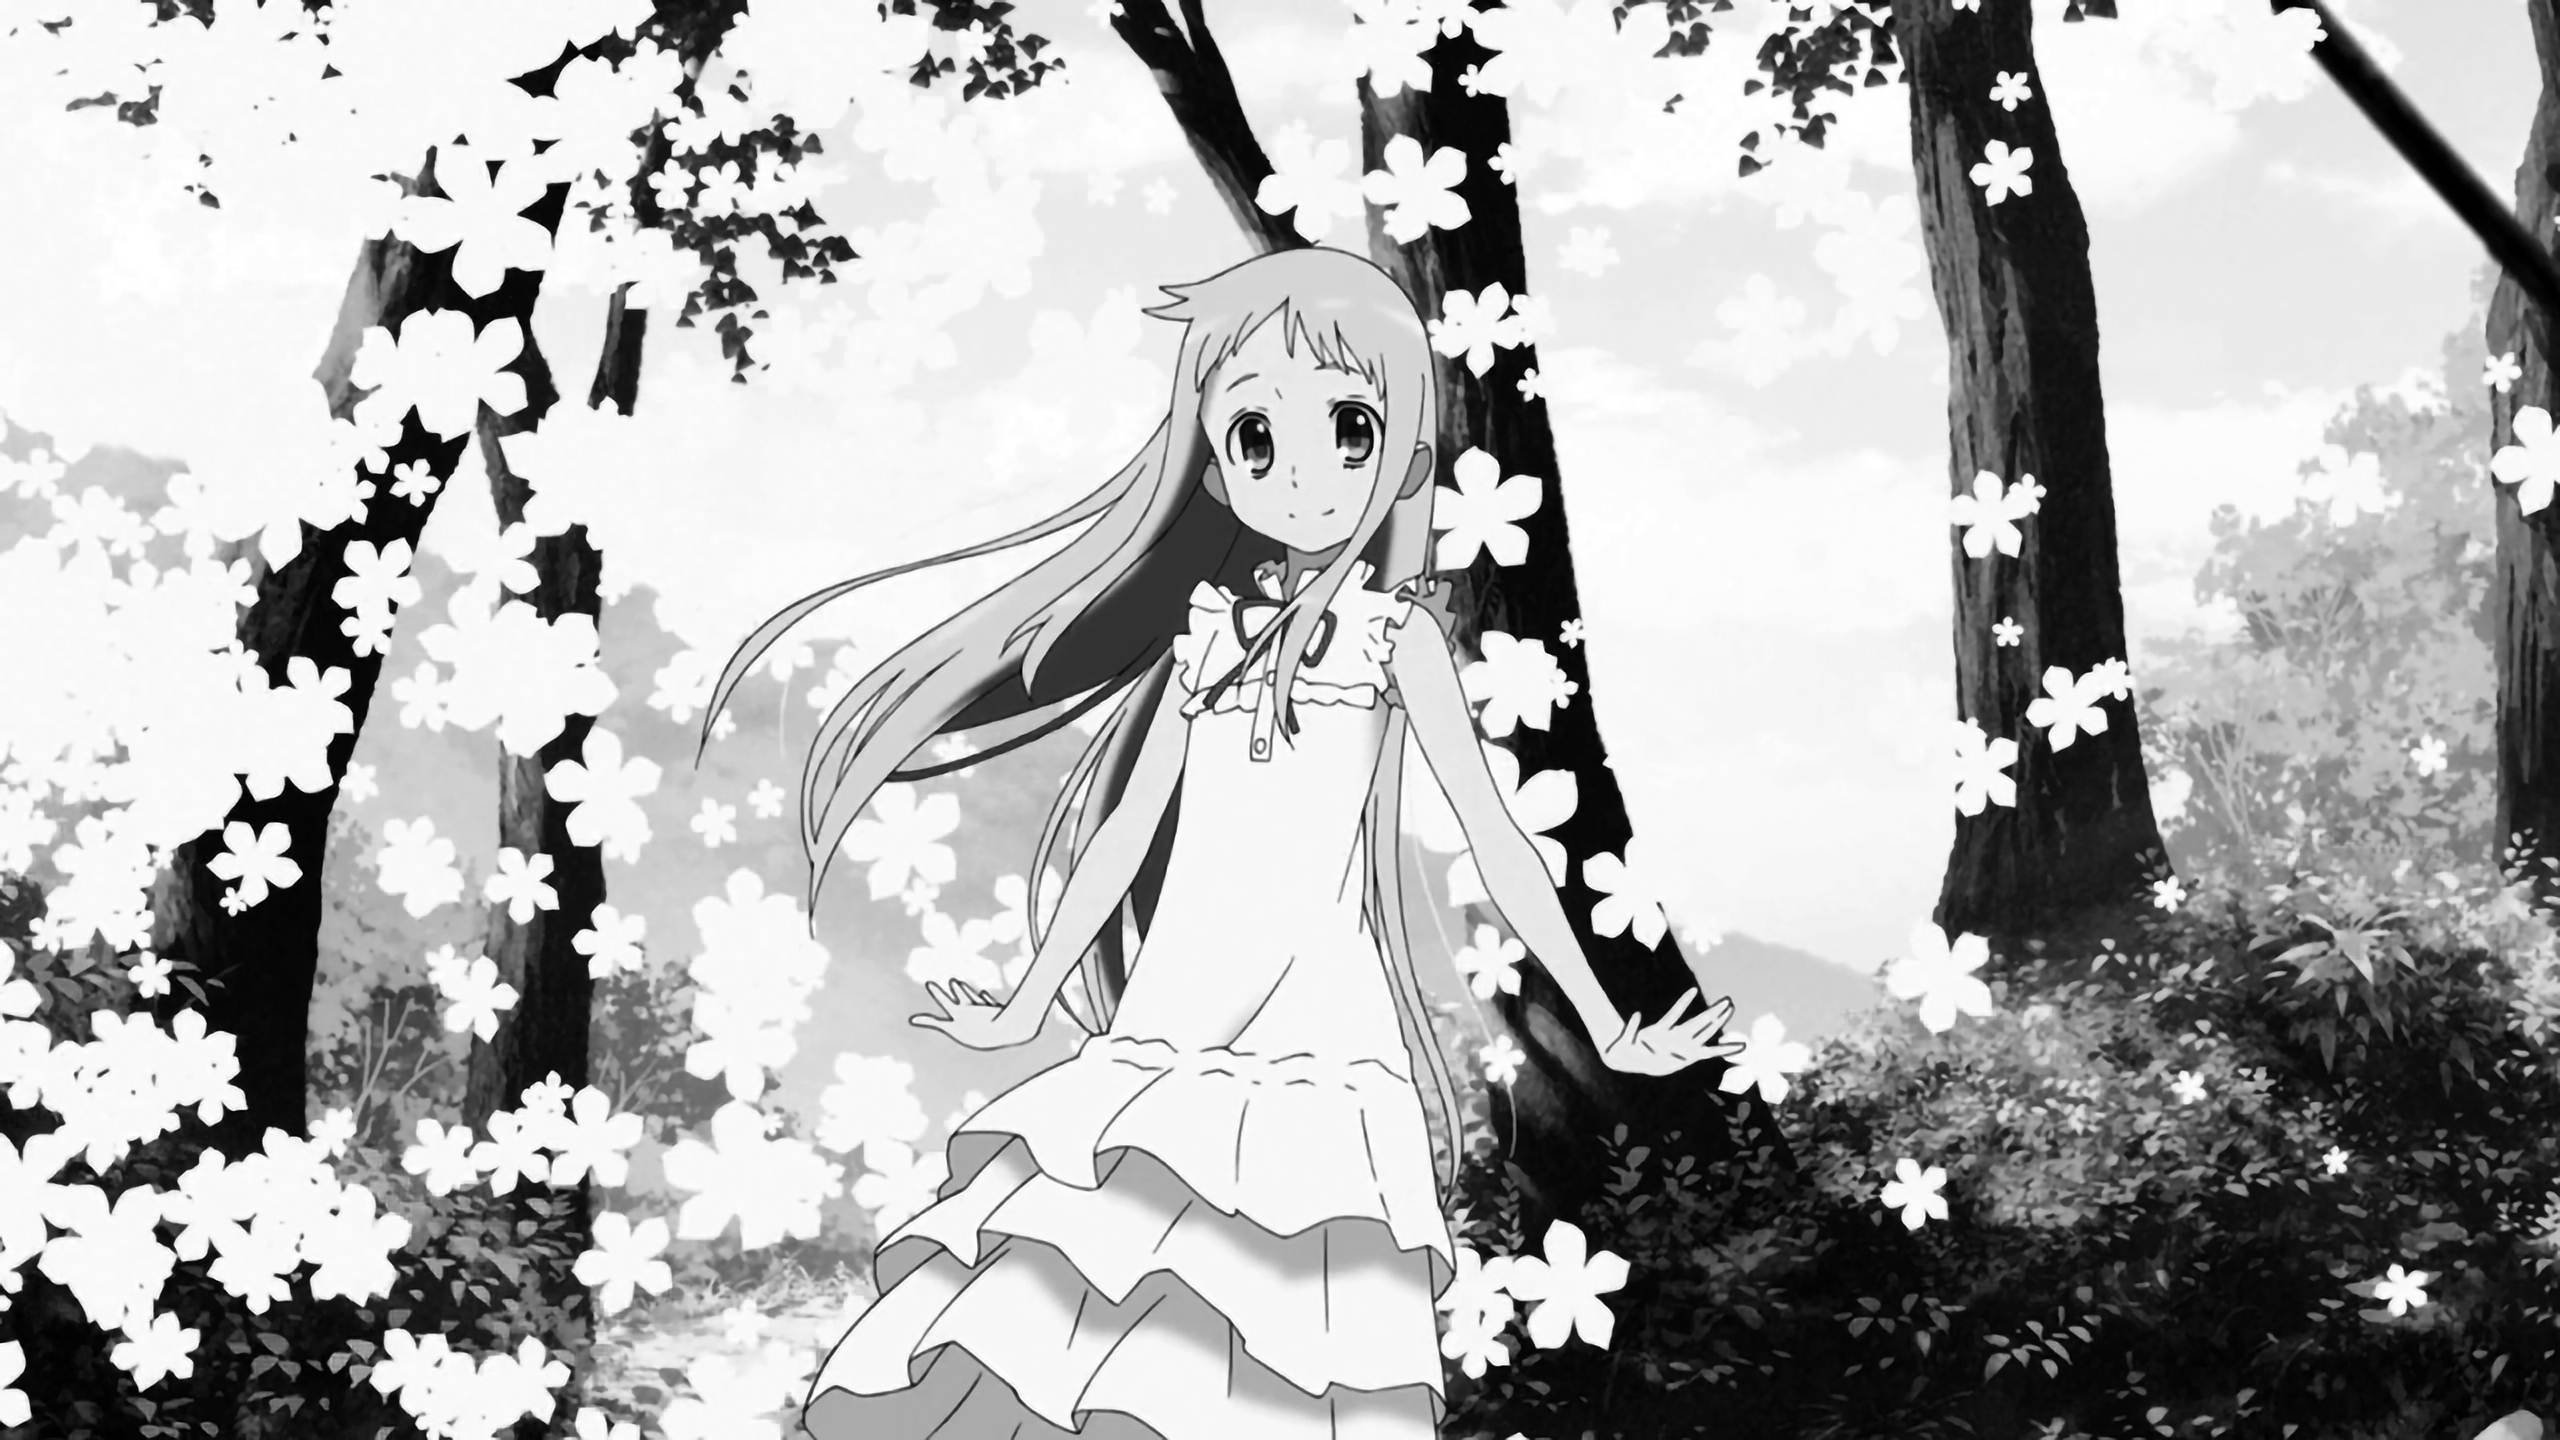 Anime 2560x1440 Ano Hi Mita Hana no Namae wo Bokutachi wa Mada Shiranai Honma Meiko monochrome forest trees dress